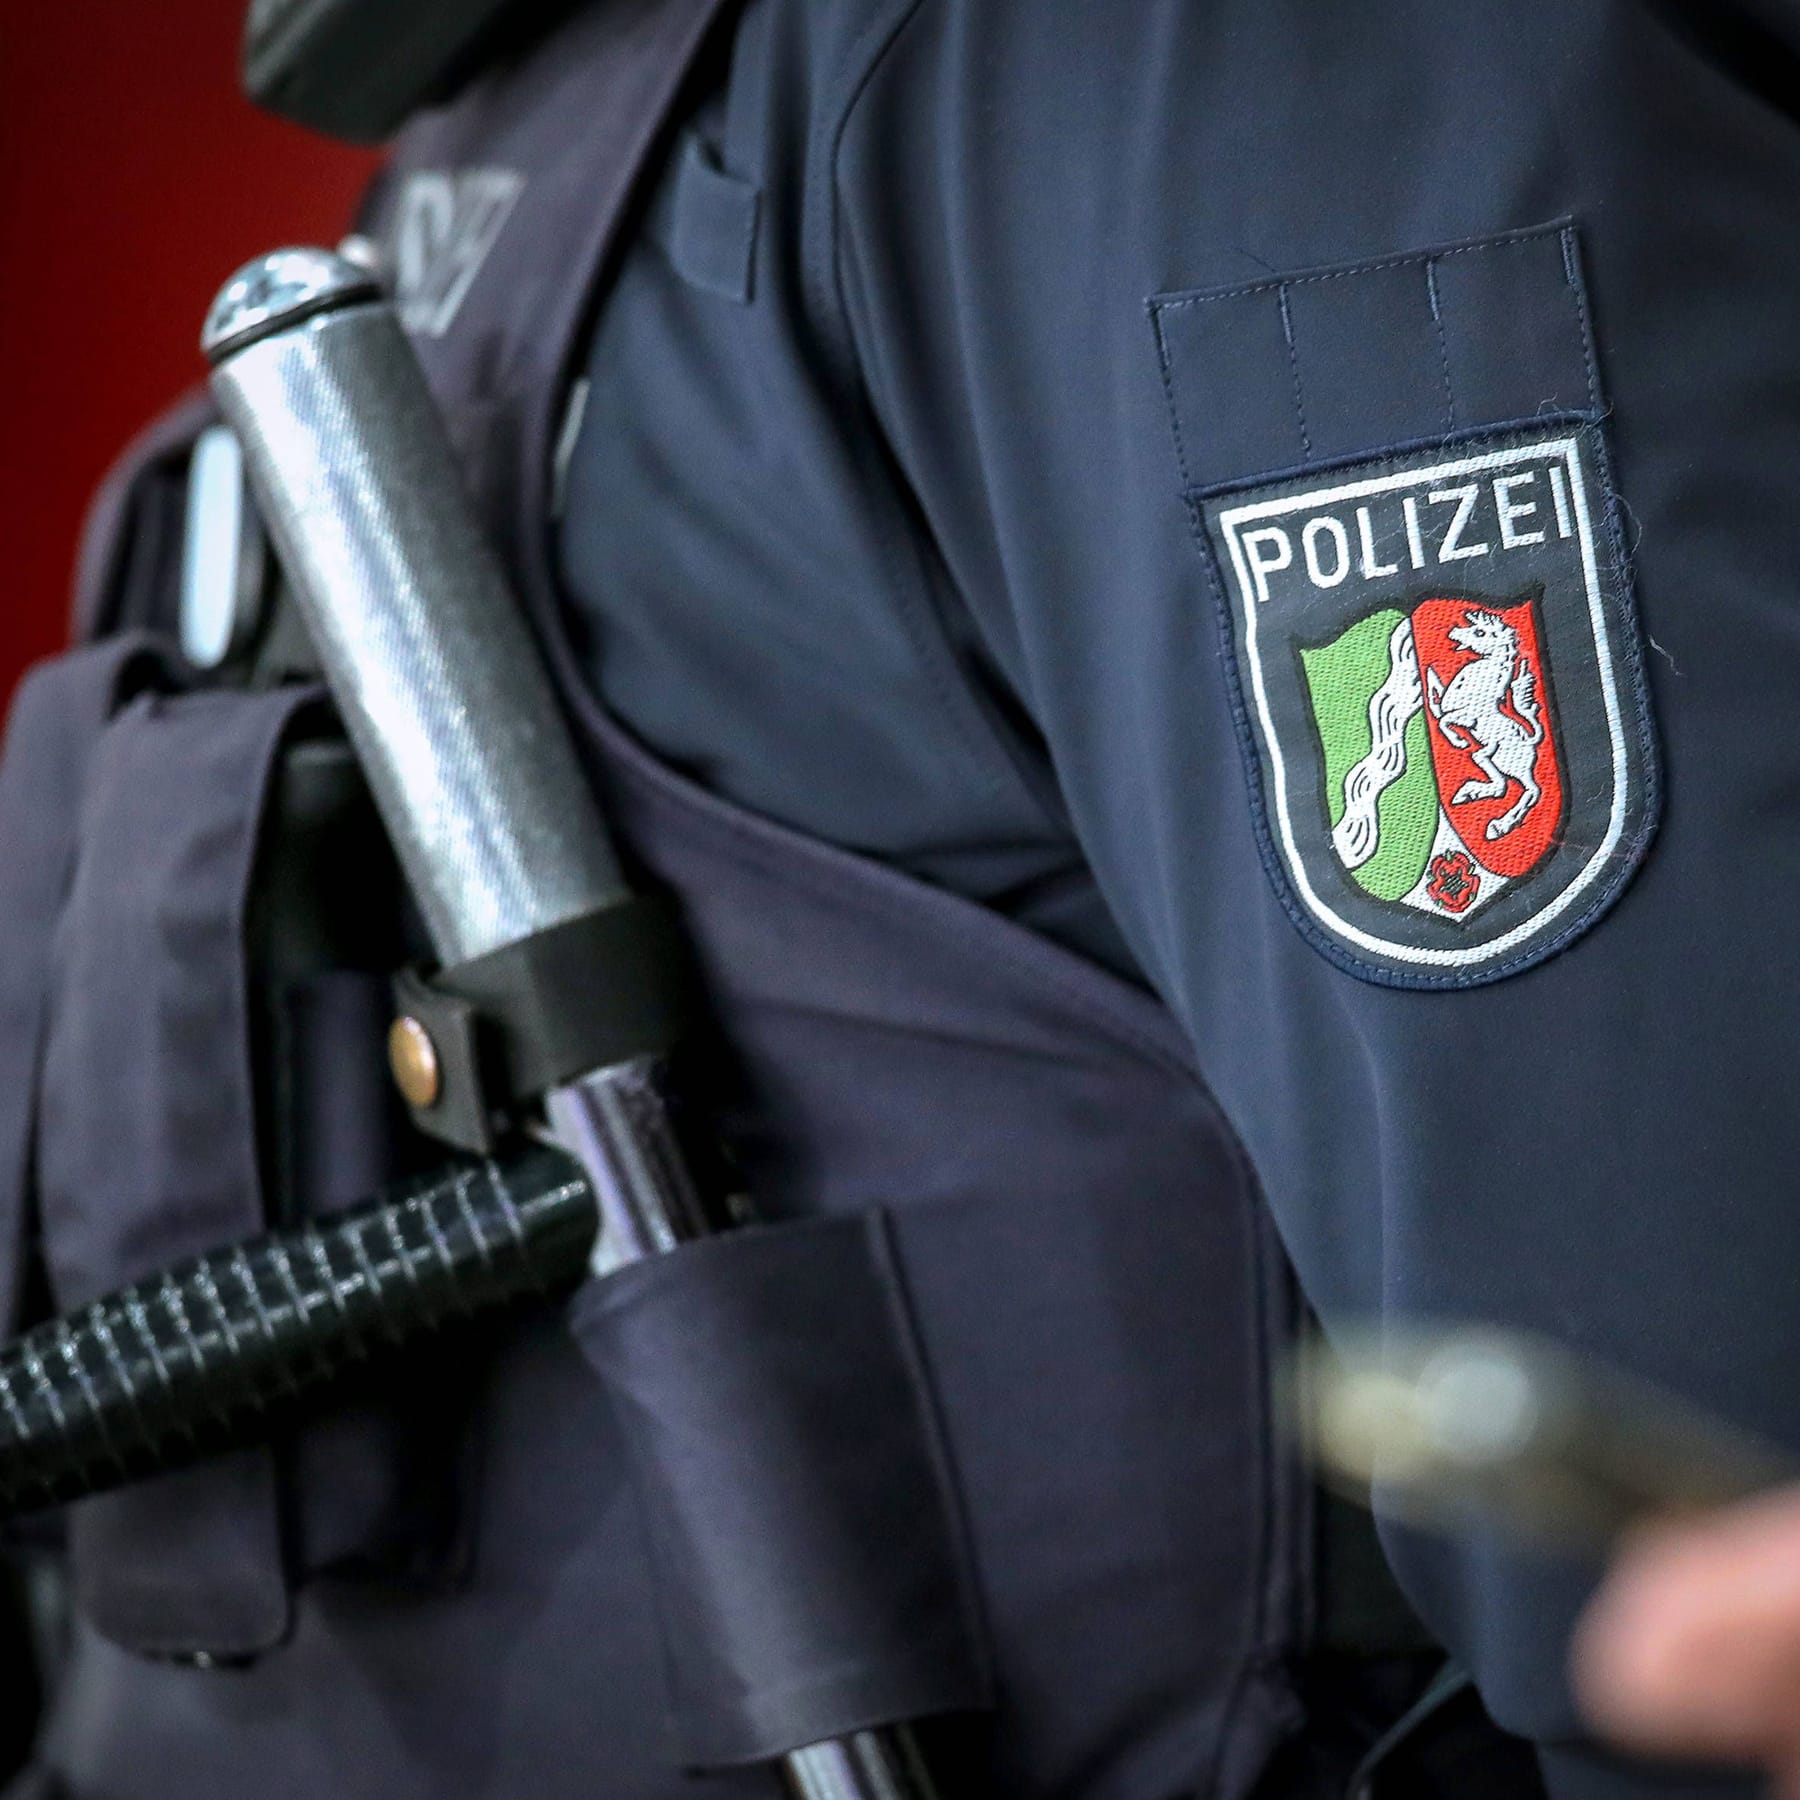 https://images.t-online.de/2023/11/x4bEFGxfdwGq/586x0:2343x2343/fit-in/1800x0/17-112023-duesseldorf-polizist-im-einsatz-nahaufnahme-detailbild-polizei-logo-schriftzug-wappen-schlagstock-nordrhein-westfalen-deutschland-17-11-2023-duesseldorf-police-officer-in-action-close-up-detail-picture-police-logo-lettering-coat-of-arms-baton-north-rhine-westphalia-germany.jpg